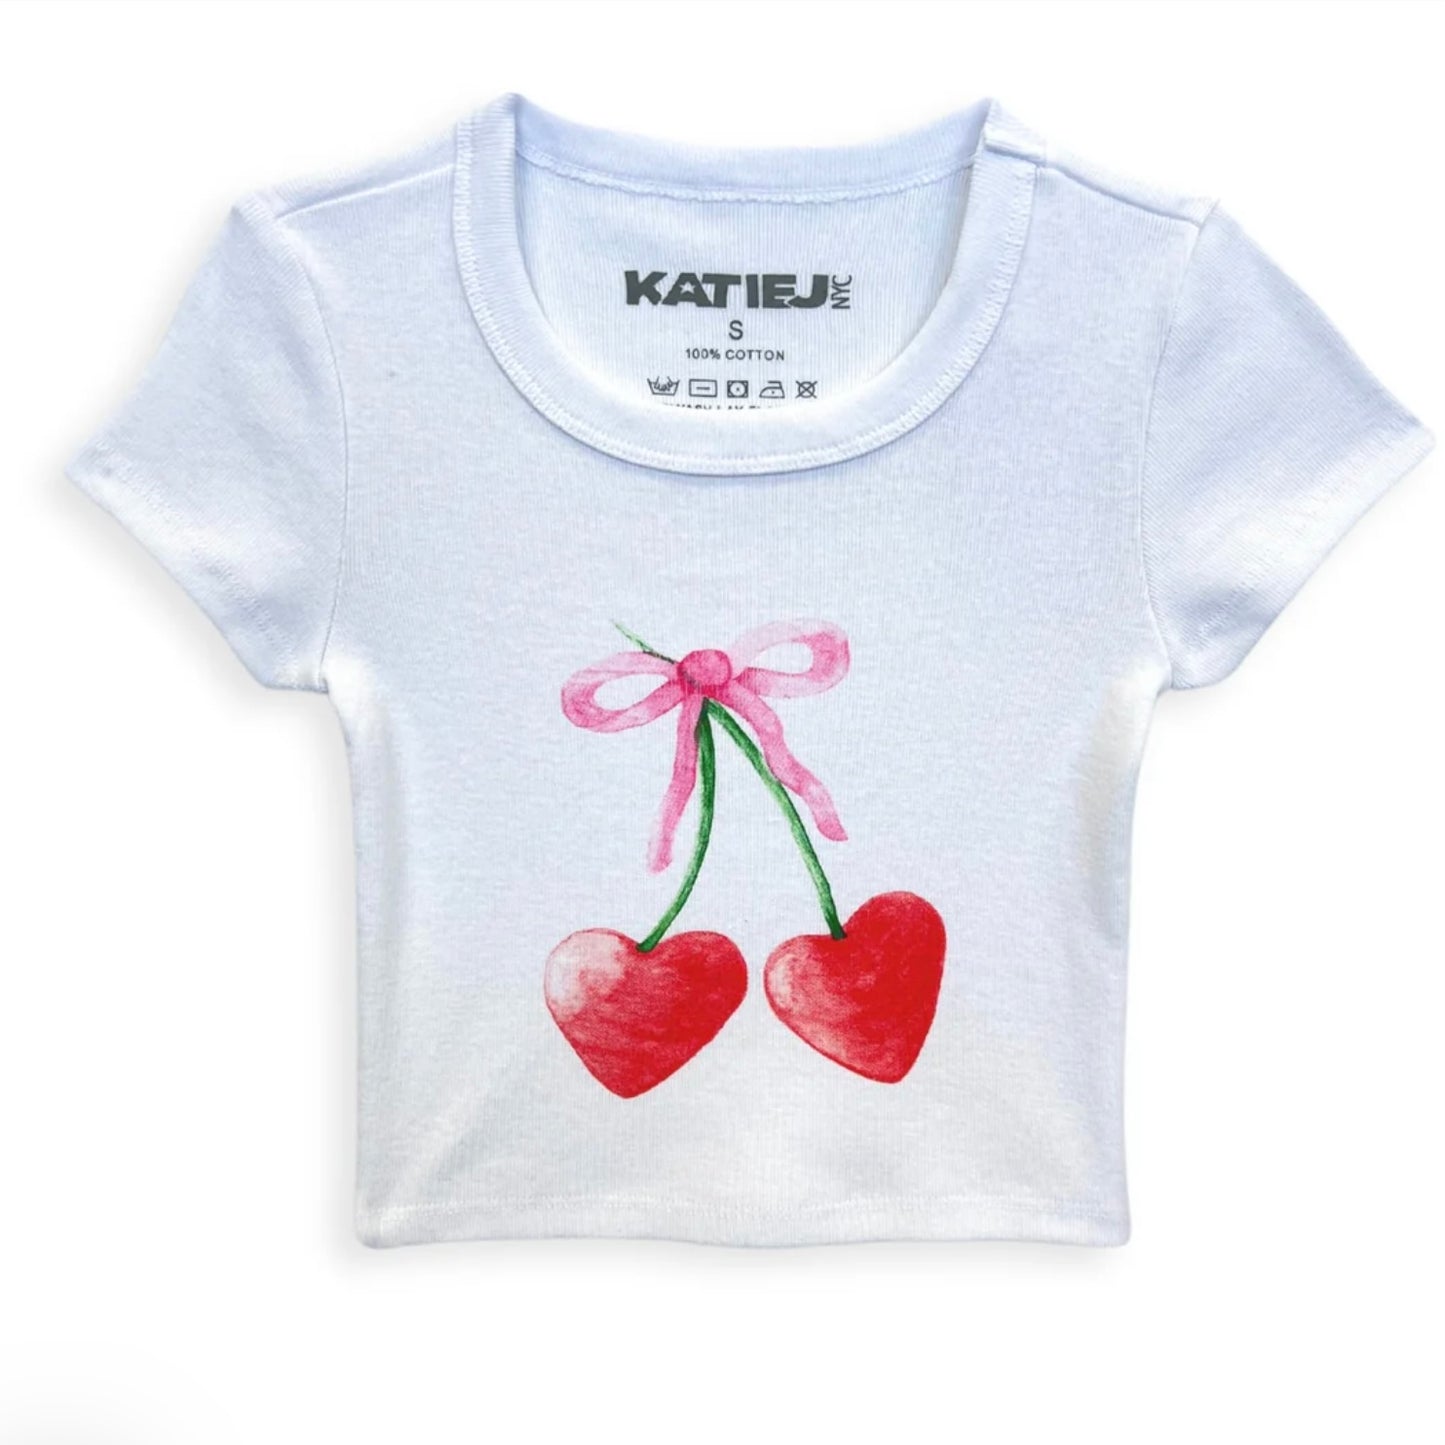 Katie J NYC  Girls Tween Cherry Bow “BABY” Tee